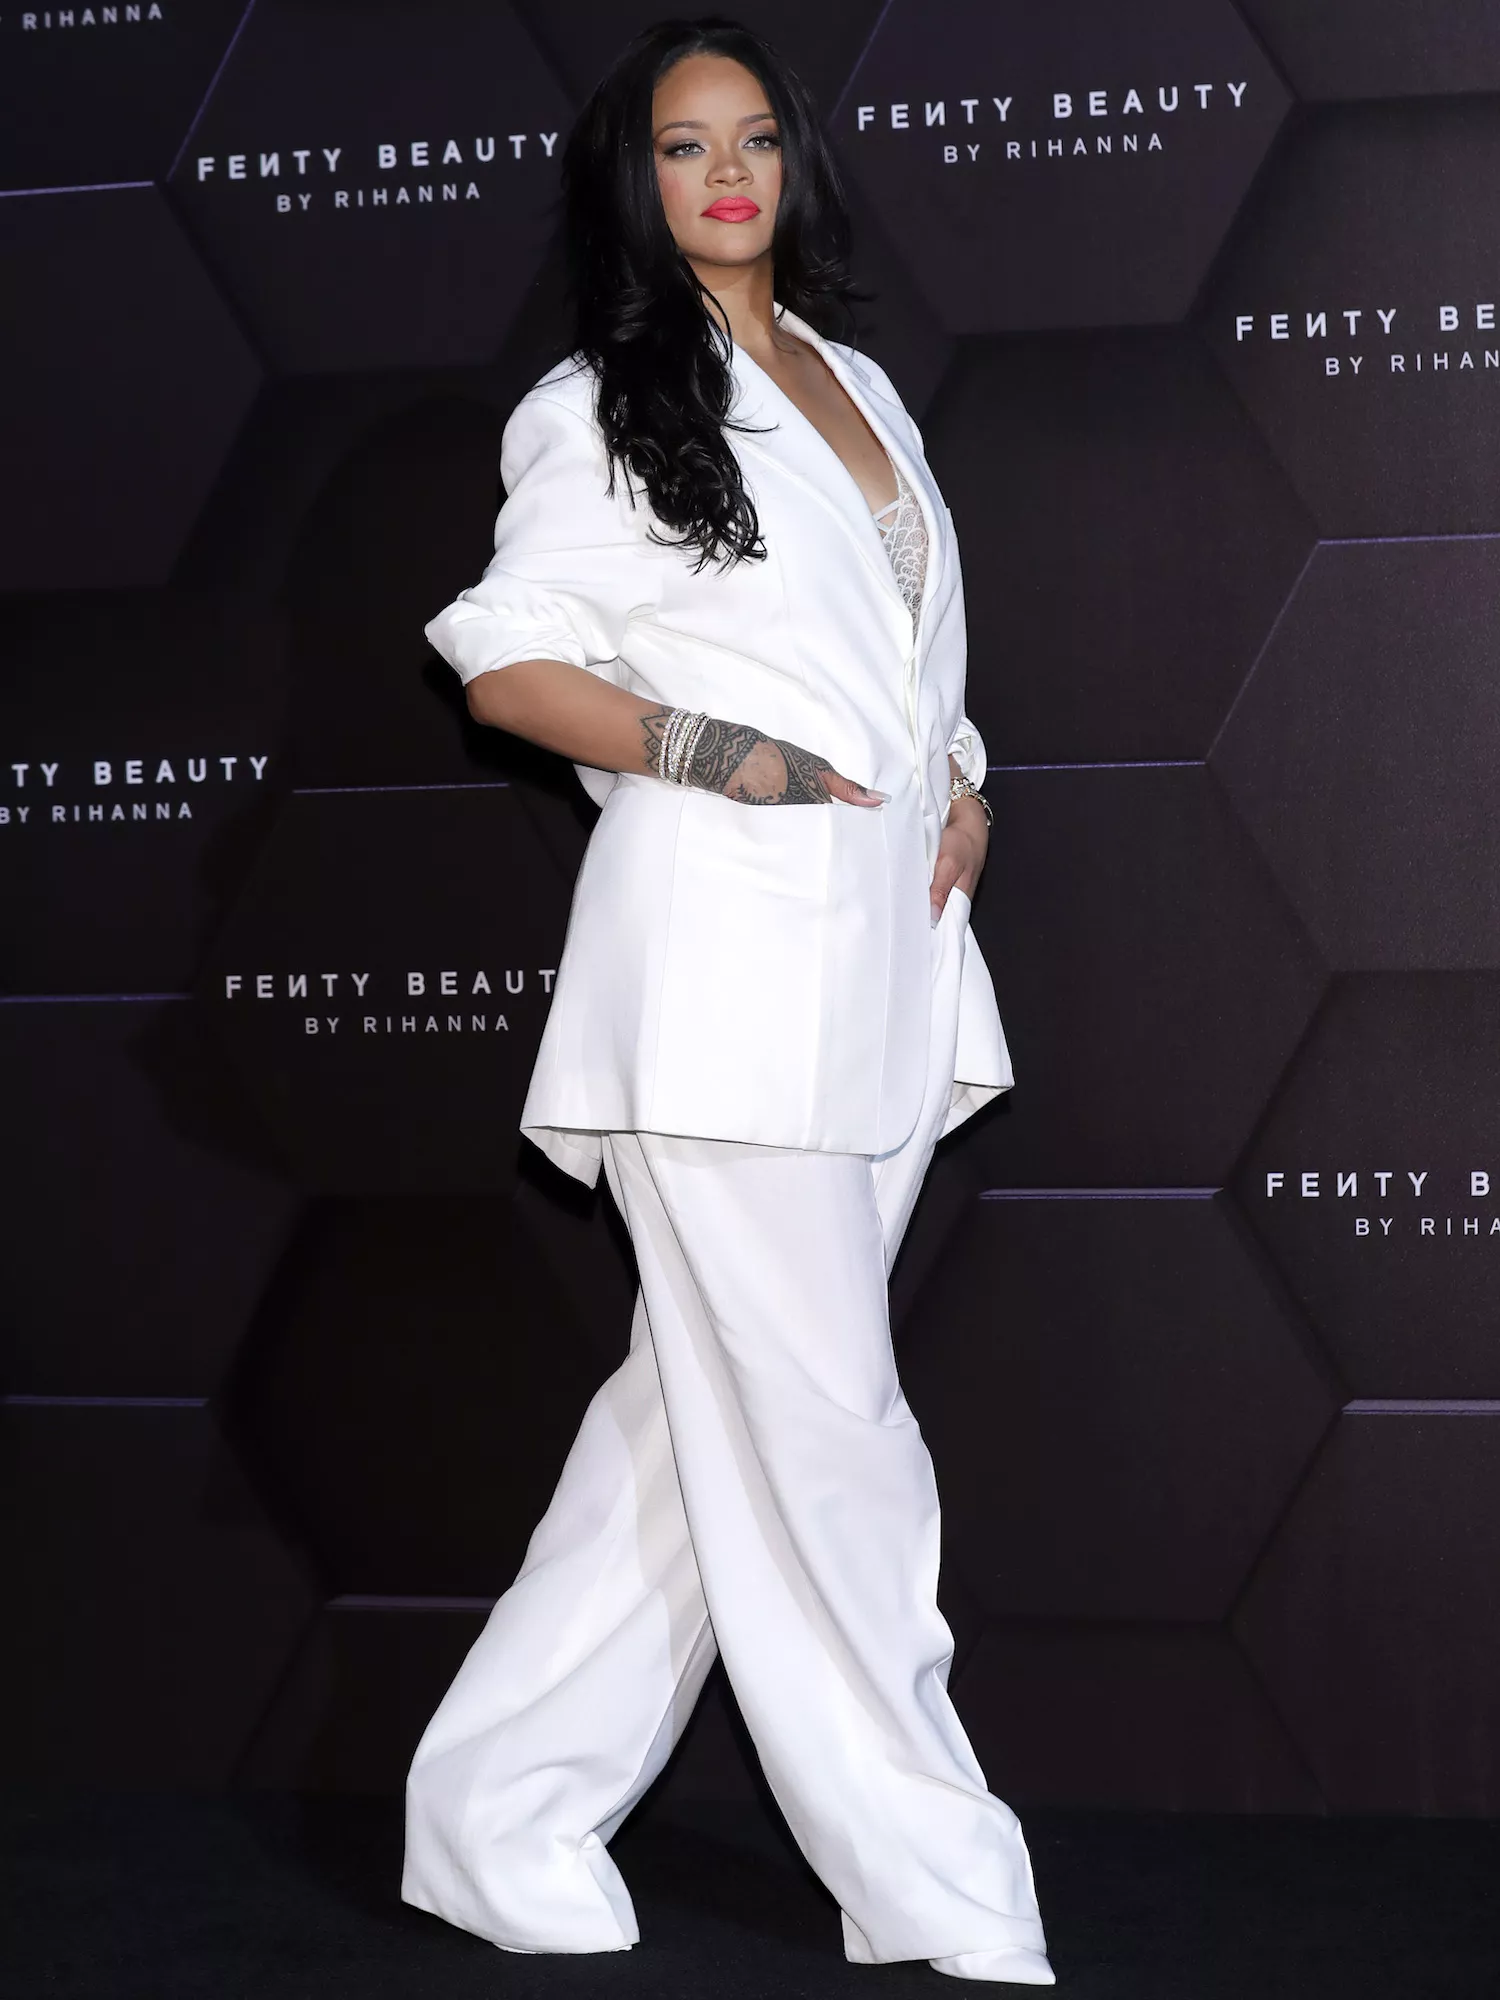 Rihanna wears a white pantsuit to the Fenty Beauty artistry talk in Seoul in 2019